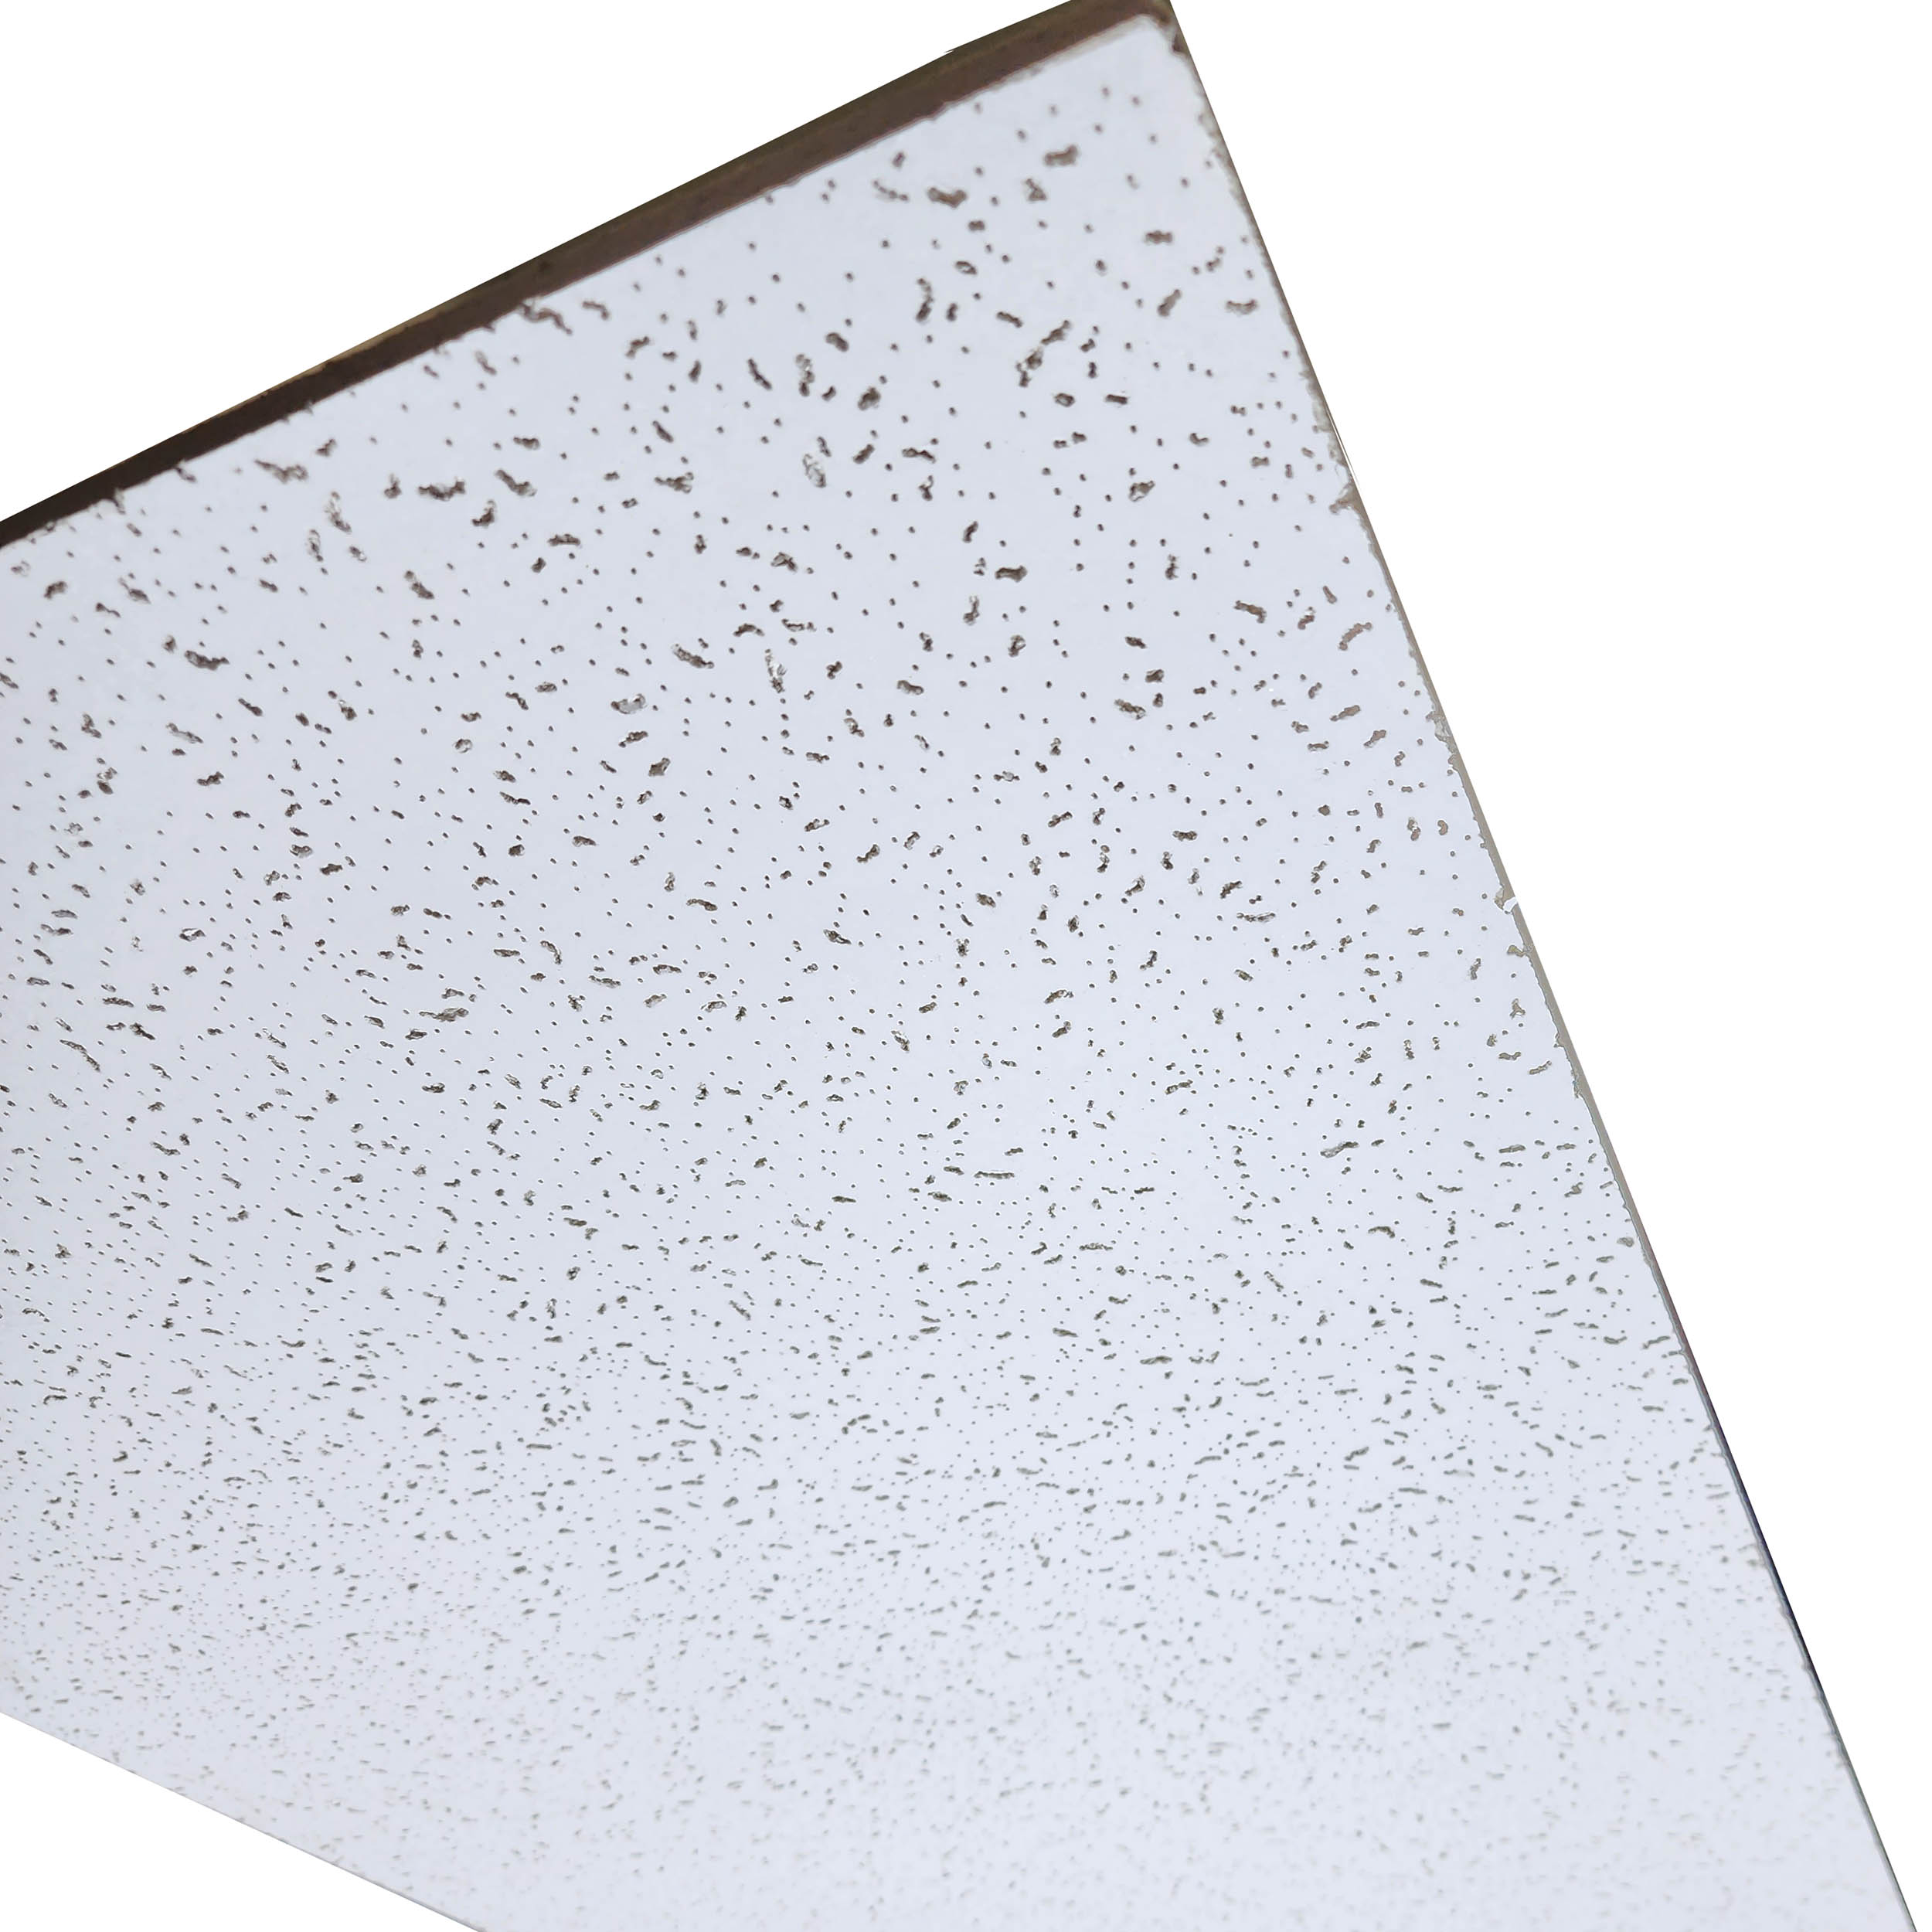 Lamina de PVC para Cielo Raso Color Blanco 1.20 x 0.60 m - ARTIPLAN